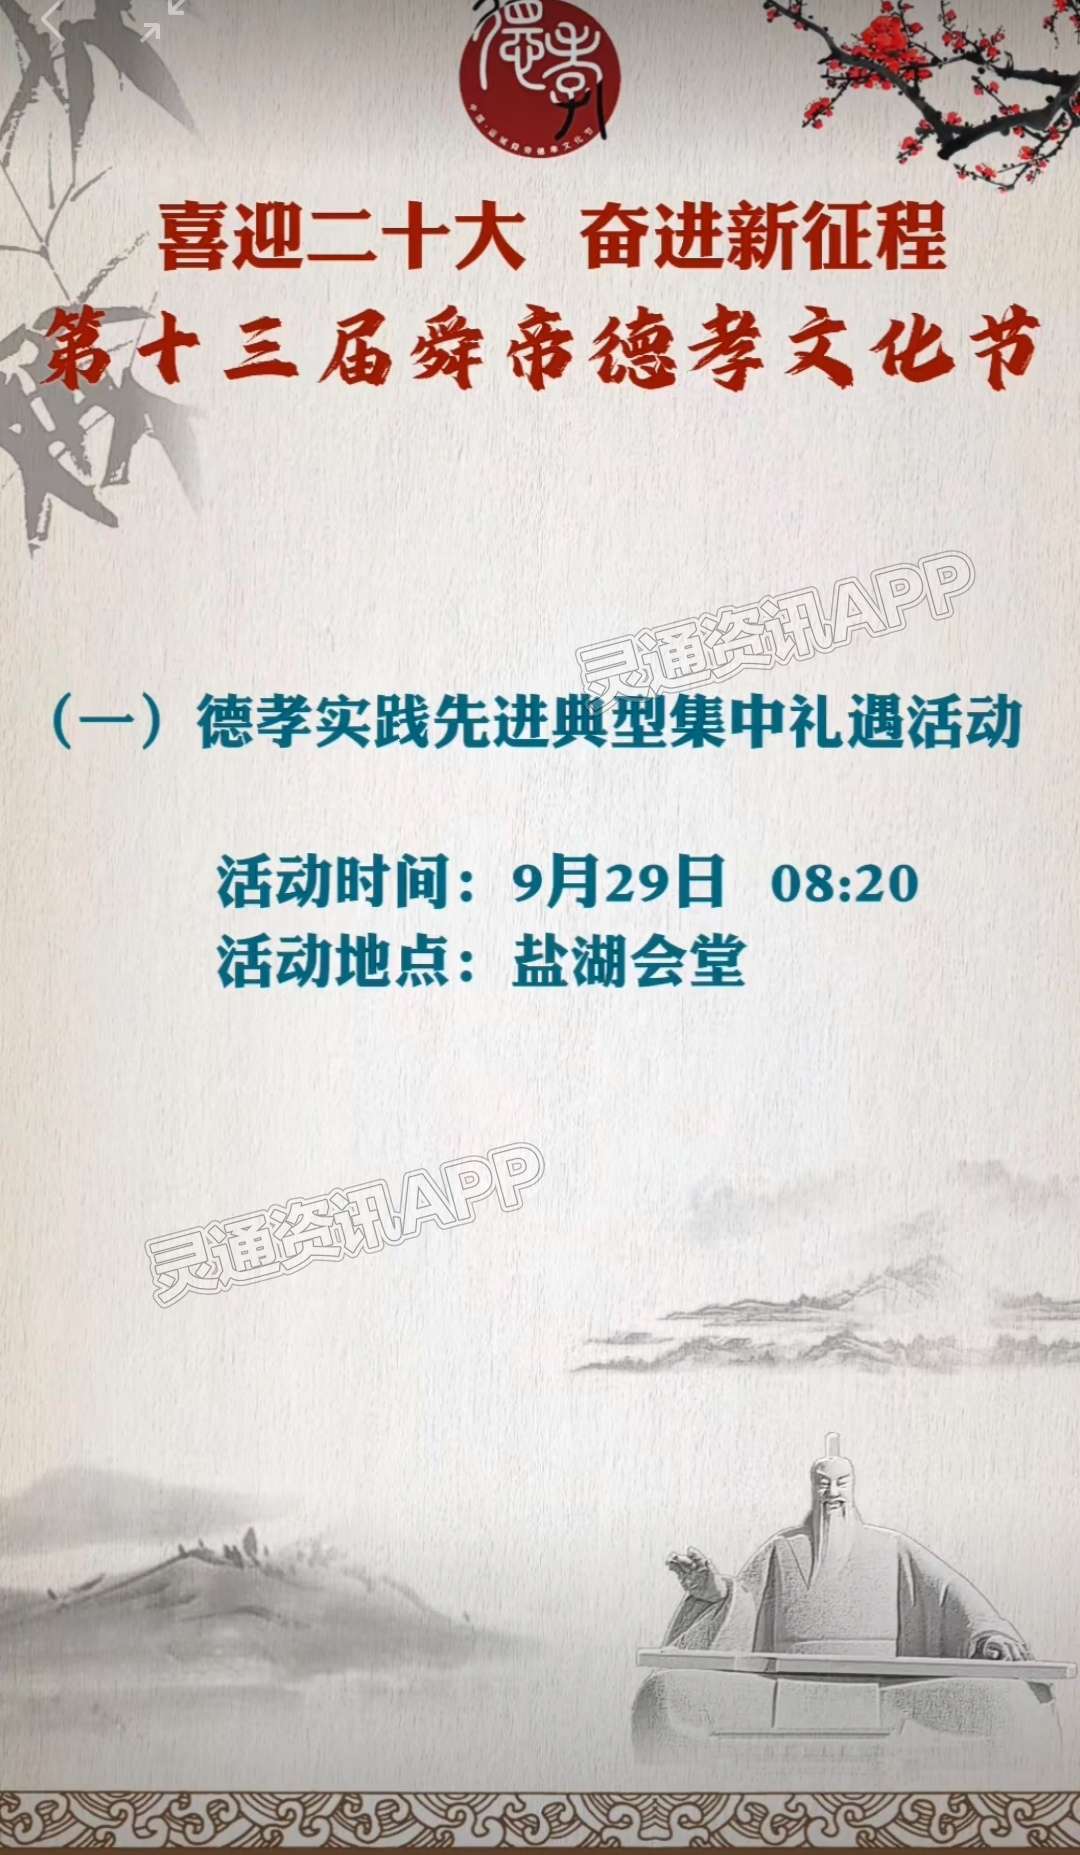 期待！第十三届运城舜帝德孝文化节将于9月29日—10月4日...“米乐娱乐官网”